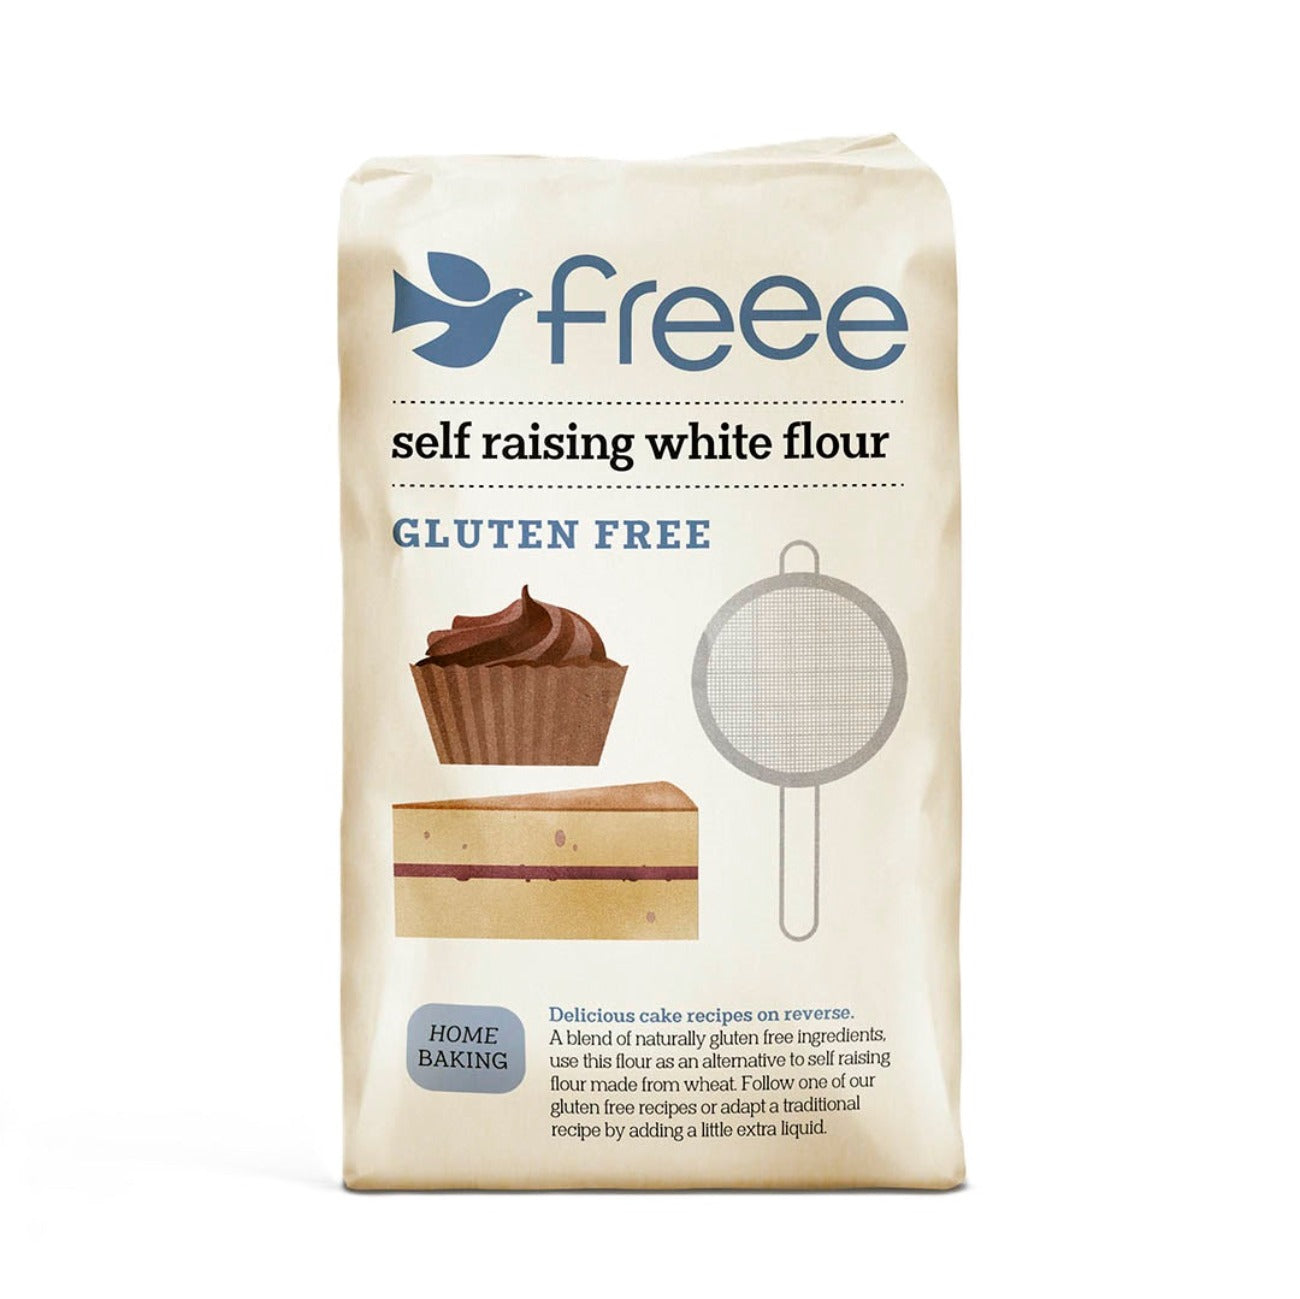 Freee Self Raising Gluten Free White Flour 1kg